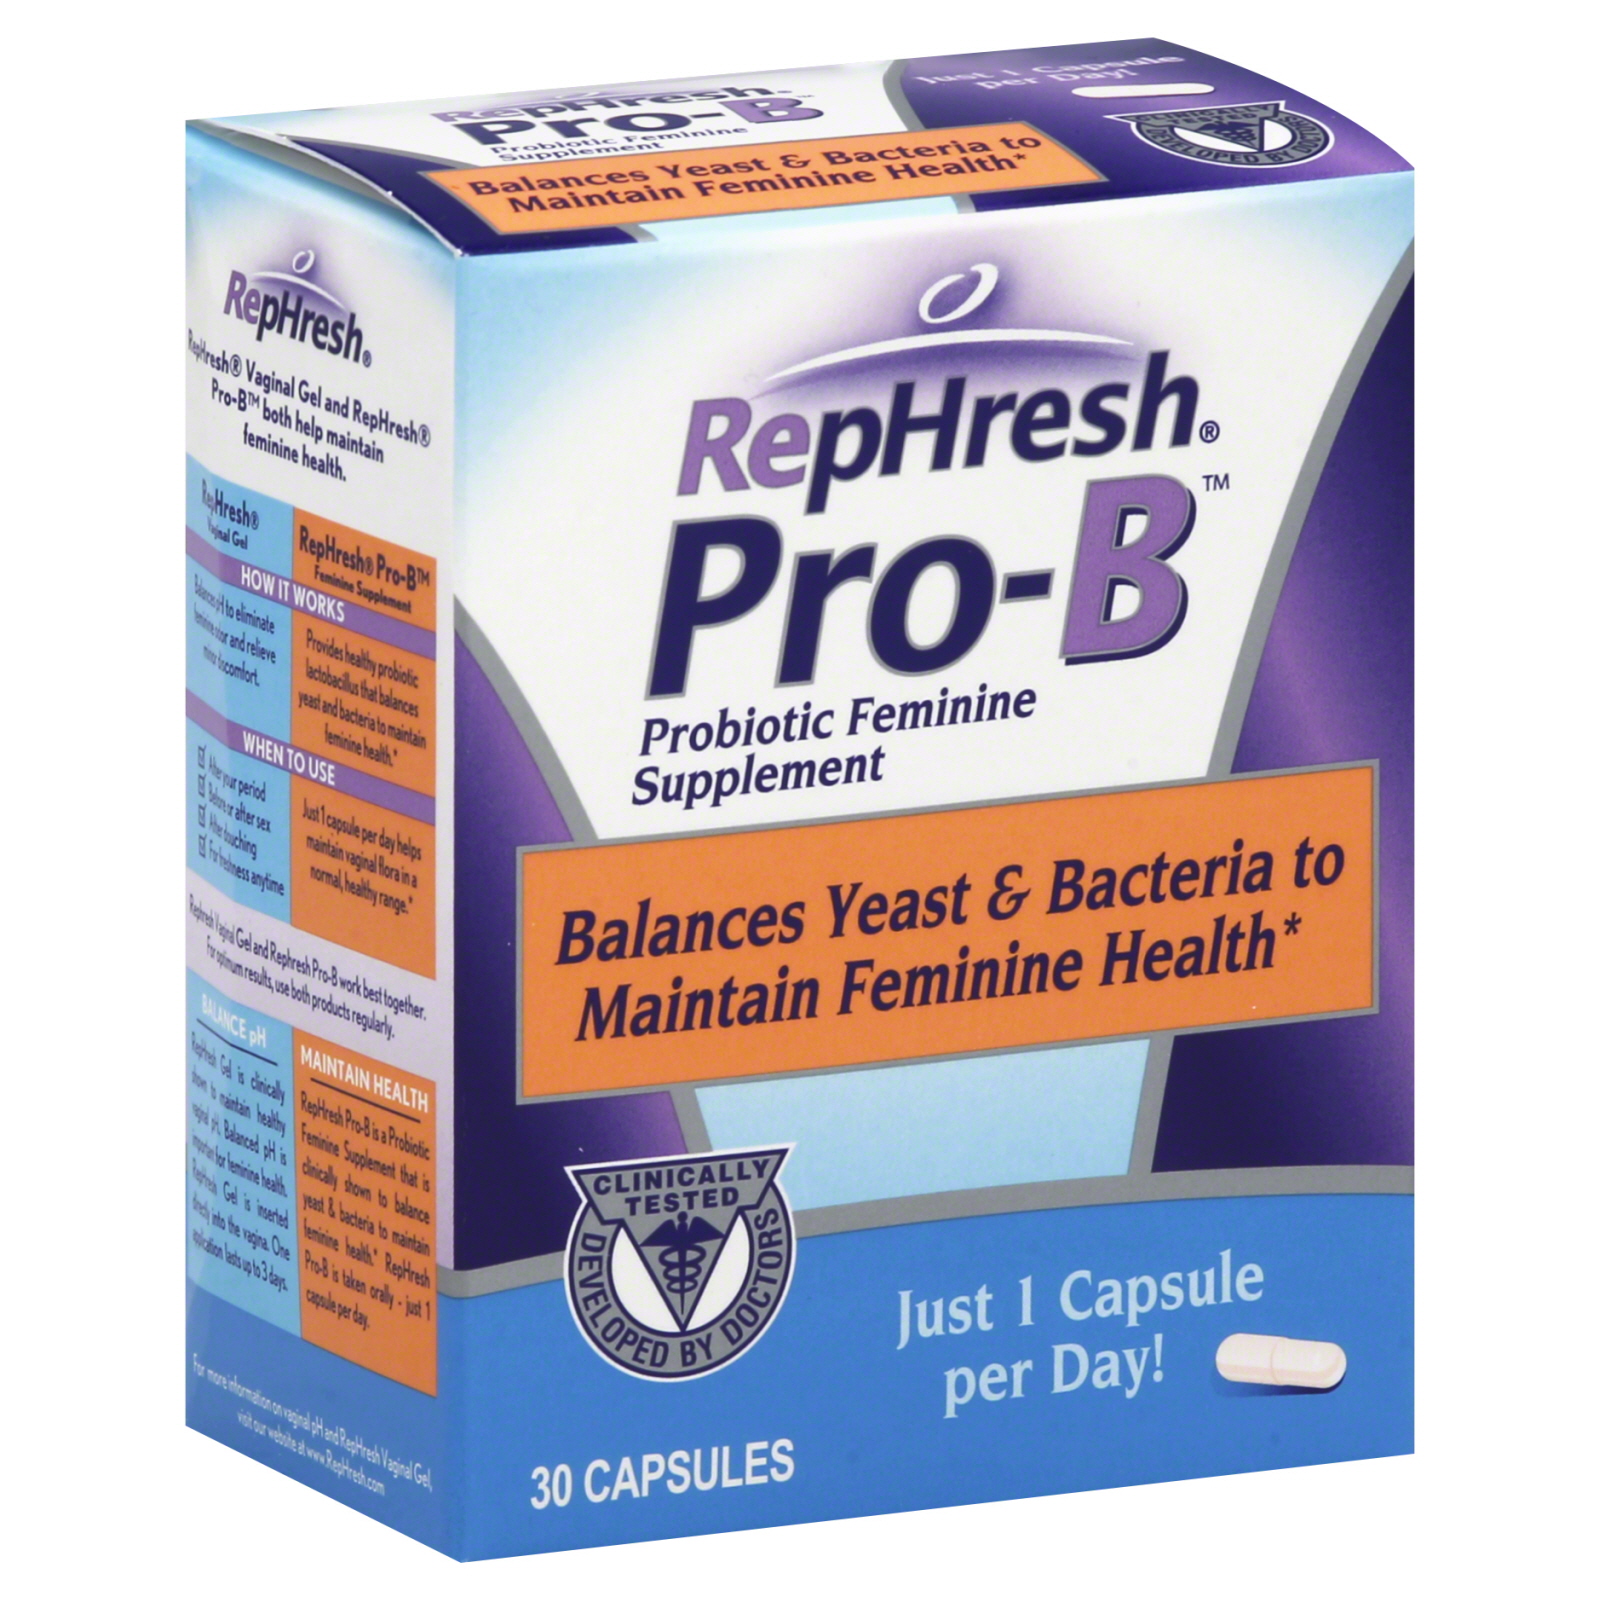 RepHresh ProB Probiotic Feminine Supplement, 30Count Capsules